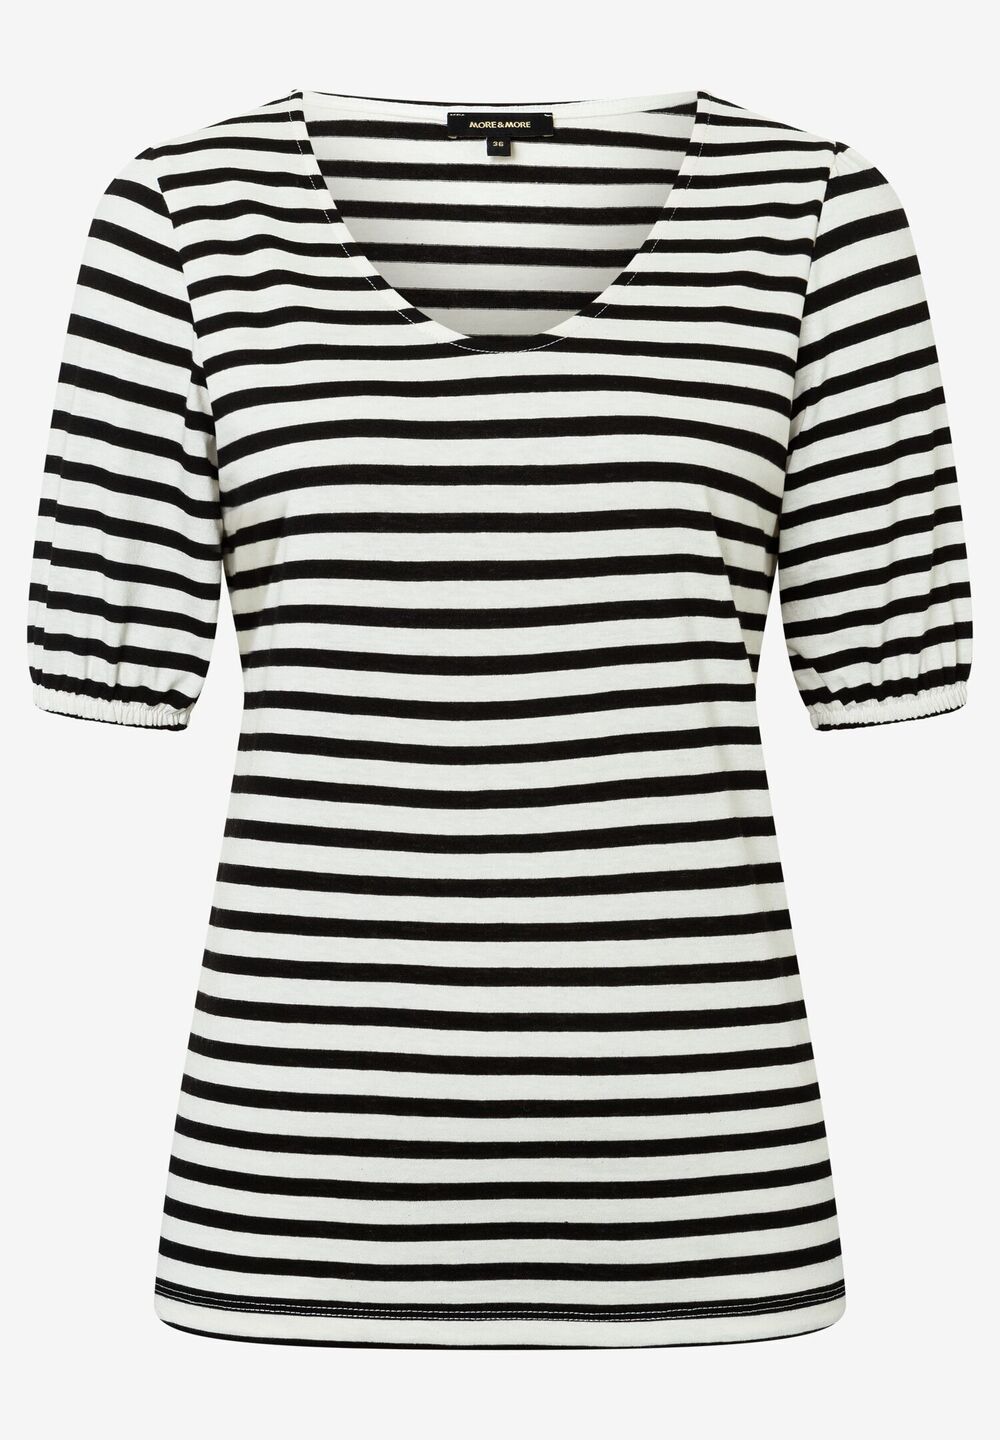 Streifenshirt, schwarz/ecru, Sommer-Kollektion, schwarzDetailansicht 2